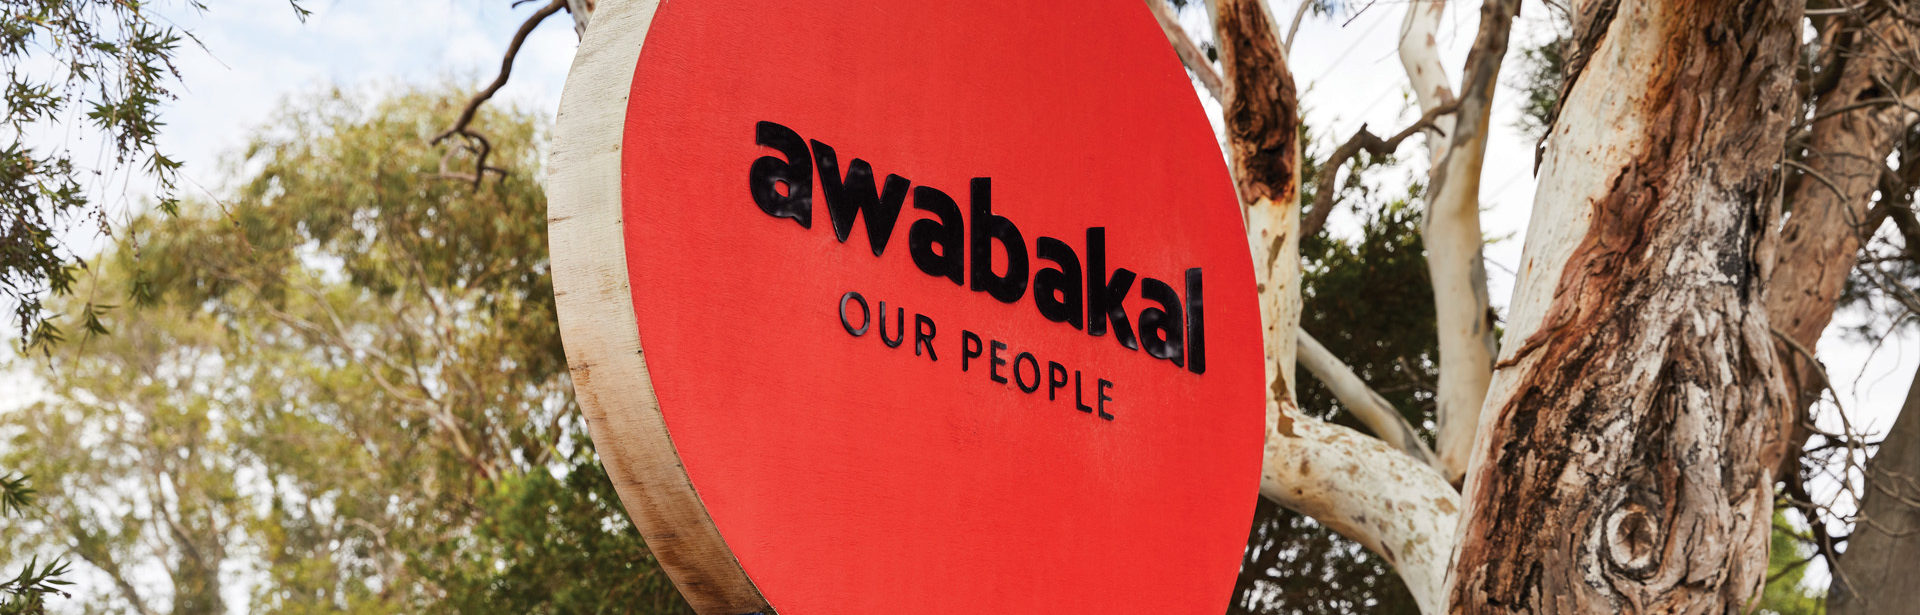 Awabakal Ltd Members Meeting